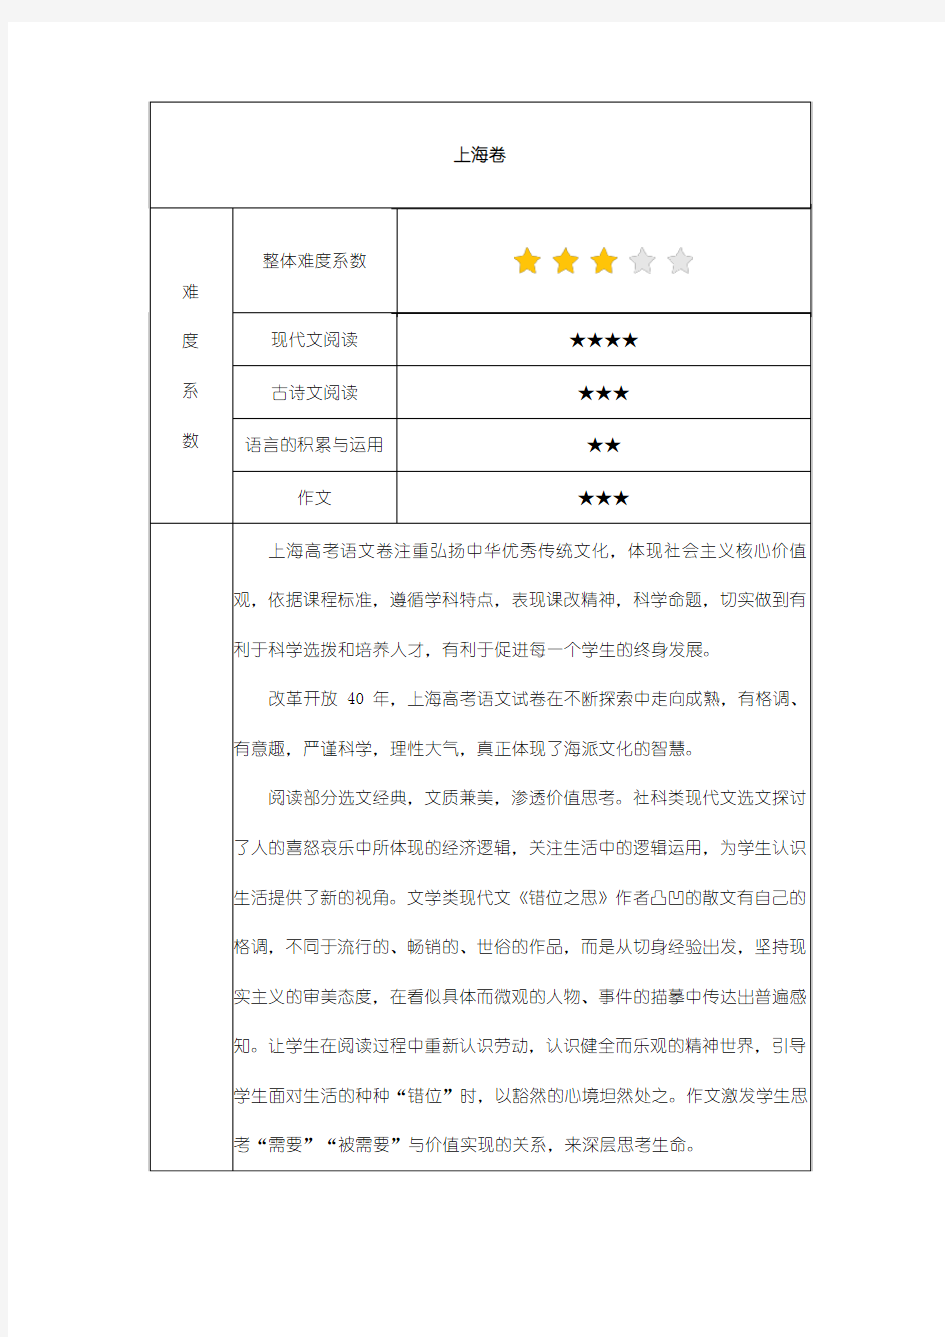 2018 高考语文 上海卷试卷分析